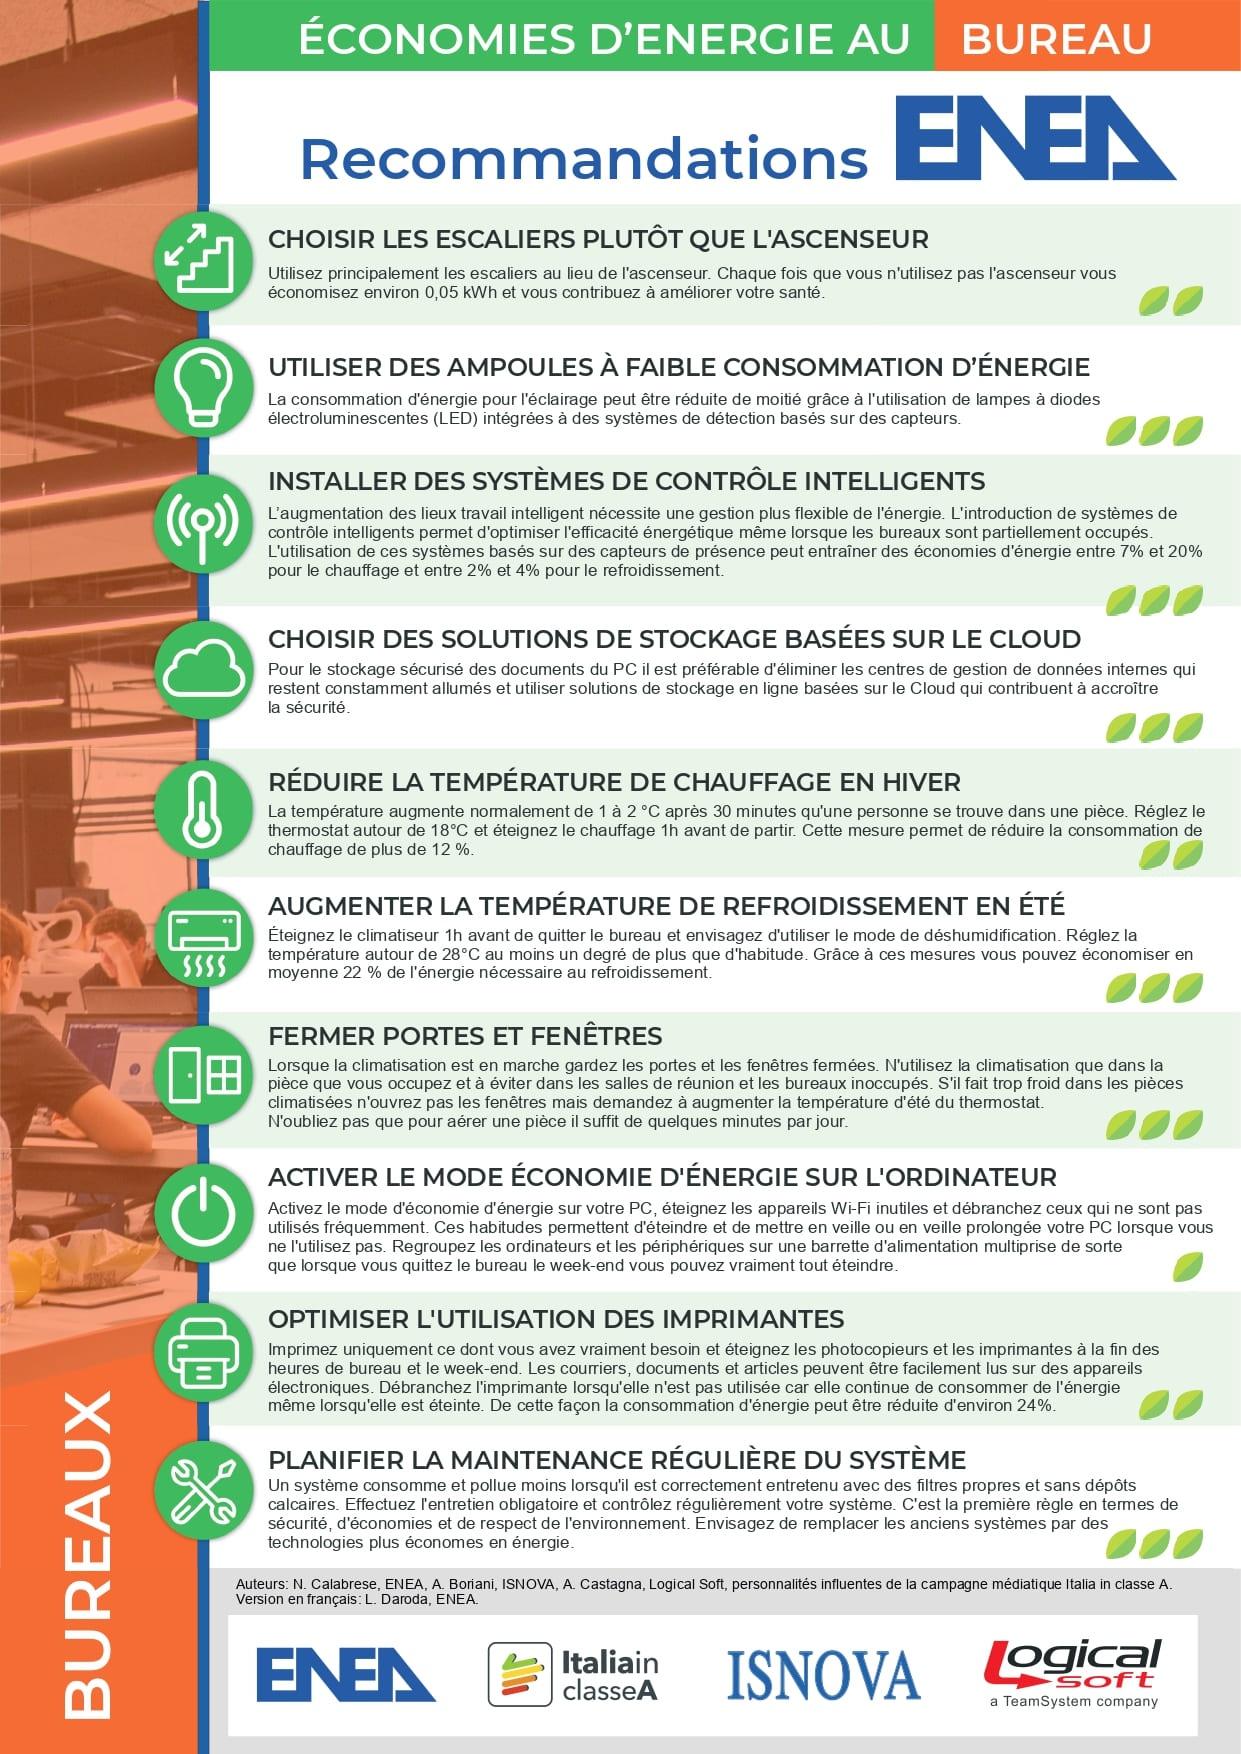 L'immagine del Poster in francese per ridurre i consumi negli uffici con i loghi ENEA, Italia in Classe A, ISNOVA e Logical Soft